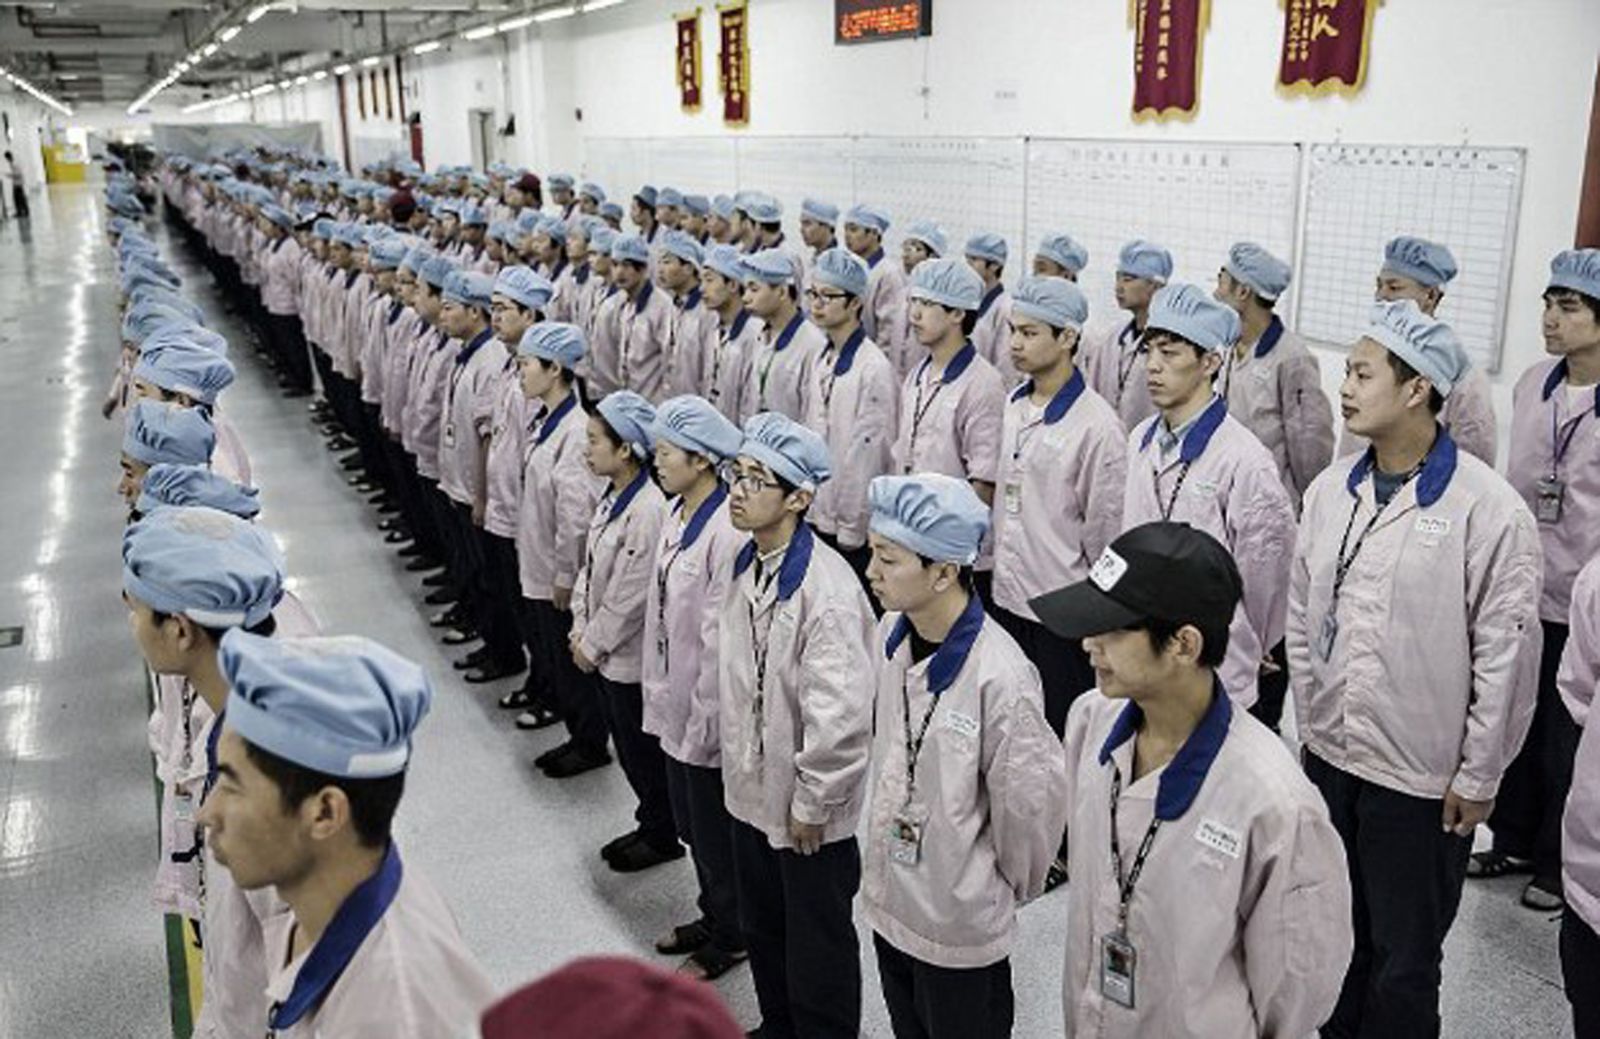 p/Pegatron - nhà lắp ráp iPhone - đang đa dạng hoá nơi sản xuất, dự kiến sẽ sản xuất tại Việt Nam trong năm 2021. Nhà máy Pegatron tại Thượng Hải với 50.000 nhân viên.p/Ảnh: Bloomberg